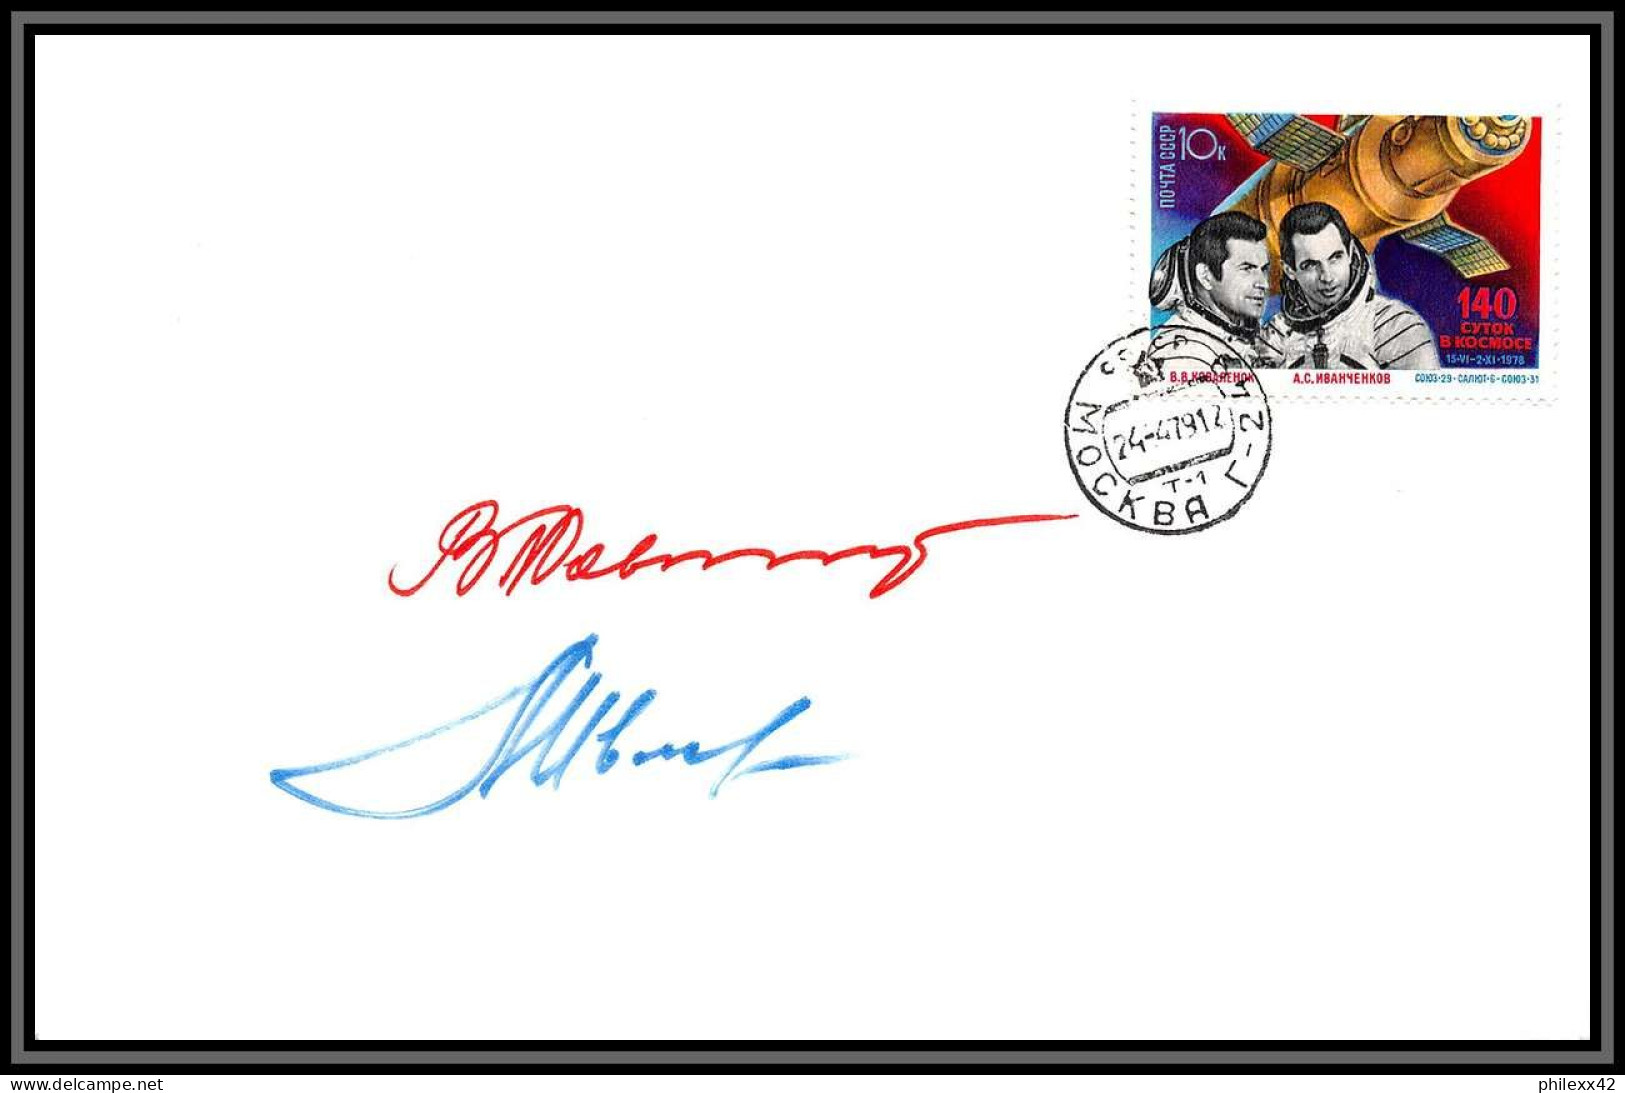 3500X Espace Space Lettre Cover Signé Signed Autograph Ivanchenkov Cosmonauts Russia Urss USSR 24/4/1979 Soyuz Soyouz 31 - Russia & USSR